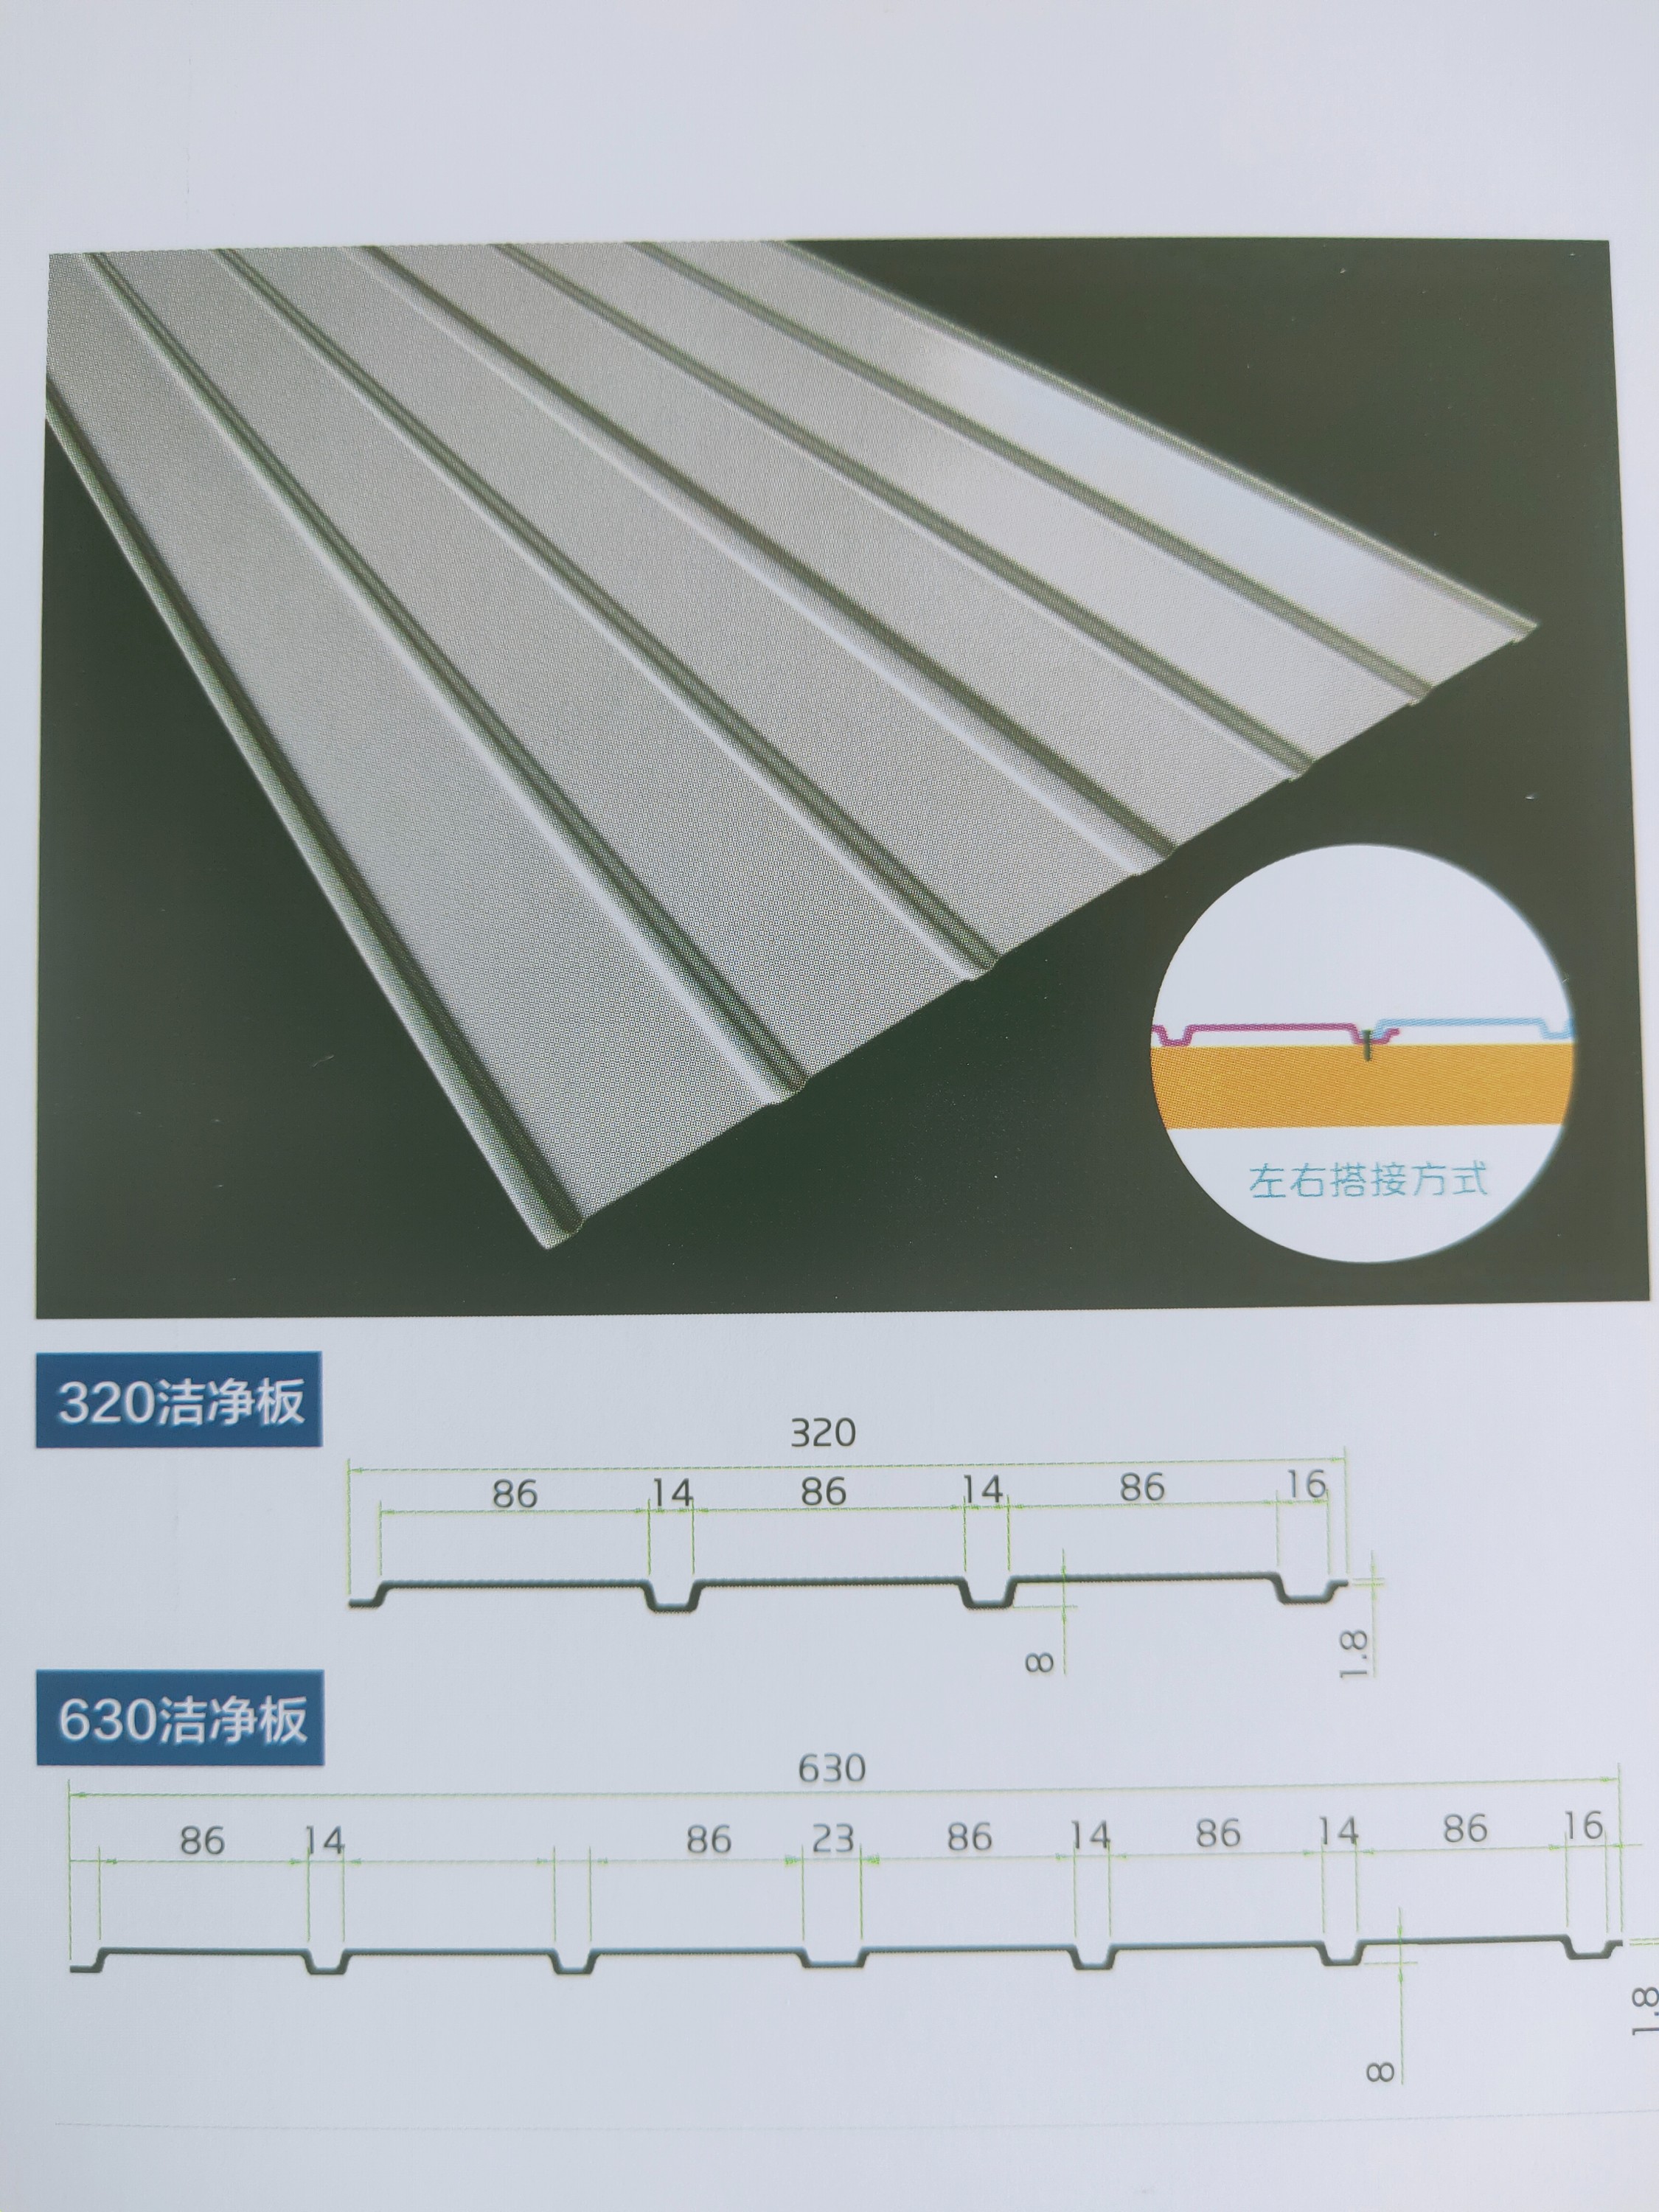 UPVC吊顶板，也叫做防腐板、洁净板，是一种非金属材质的装饰板。防火等级B1级。耐硫酸、耐酸醋、耐酸碱性能优异。